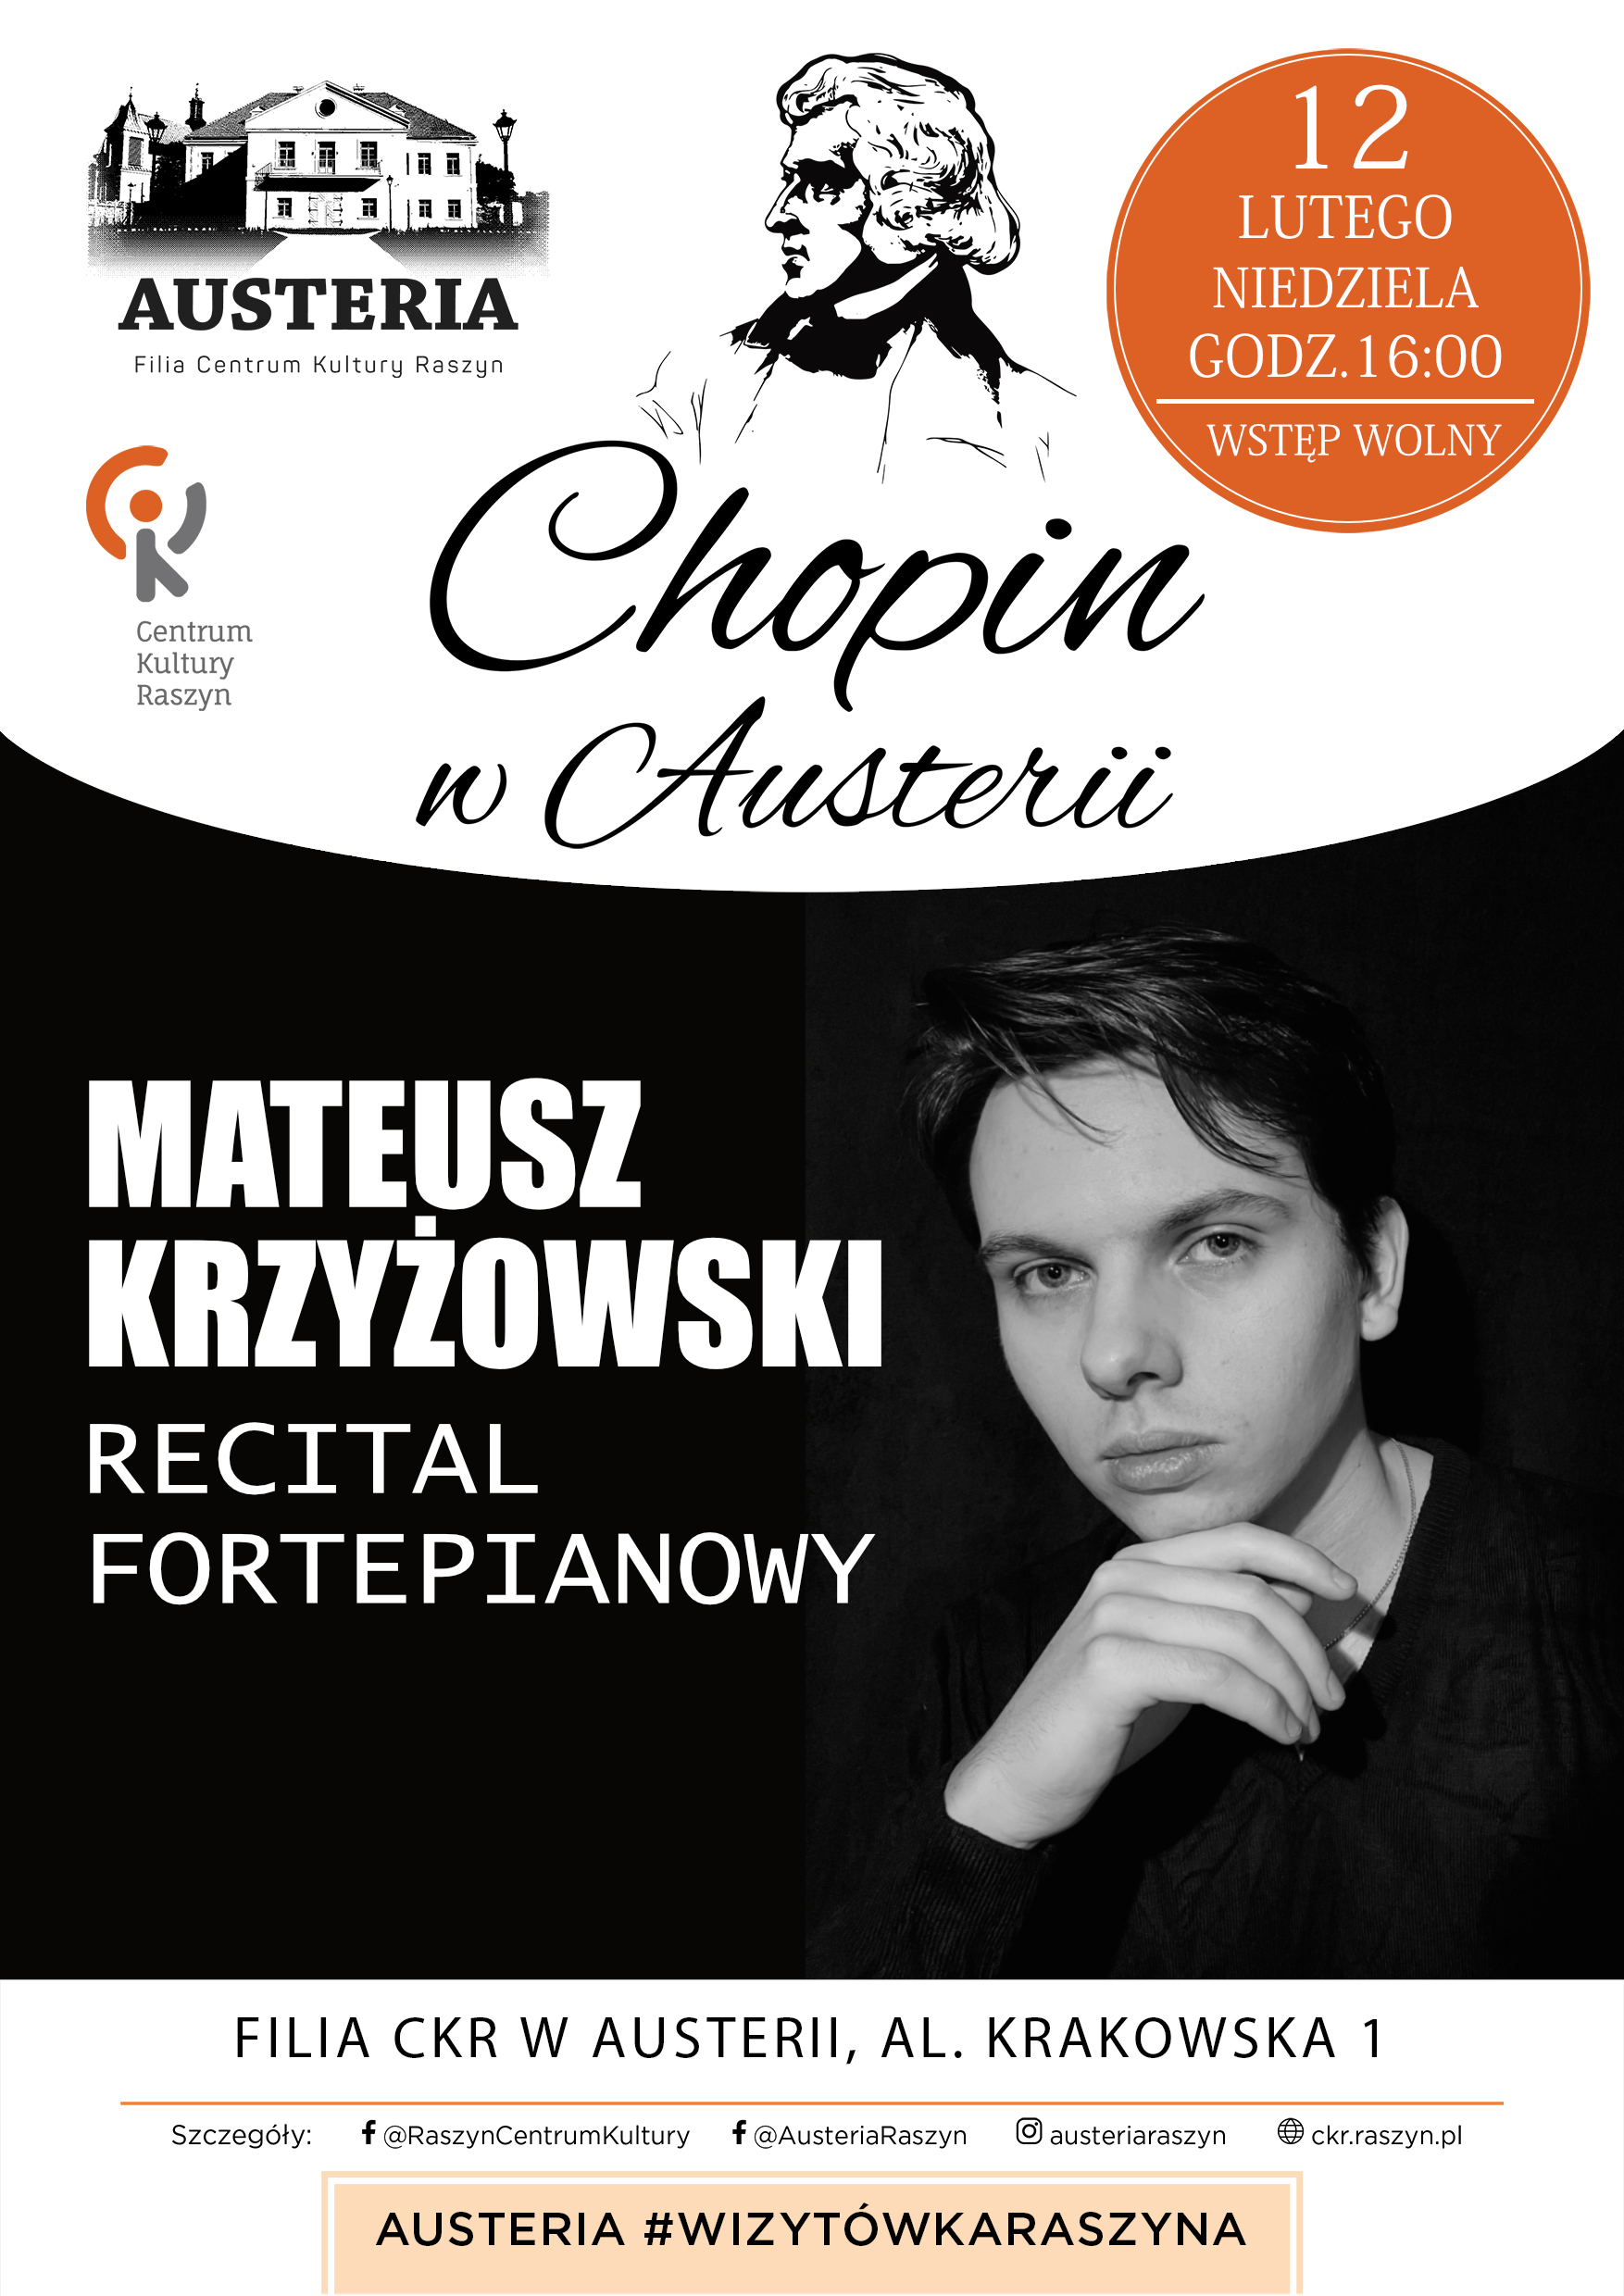 Recital fortepianowy Mateusza Krzyżowskiego w ramach cyklu Chopin w Austerii